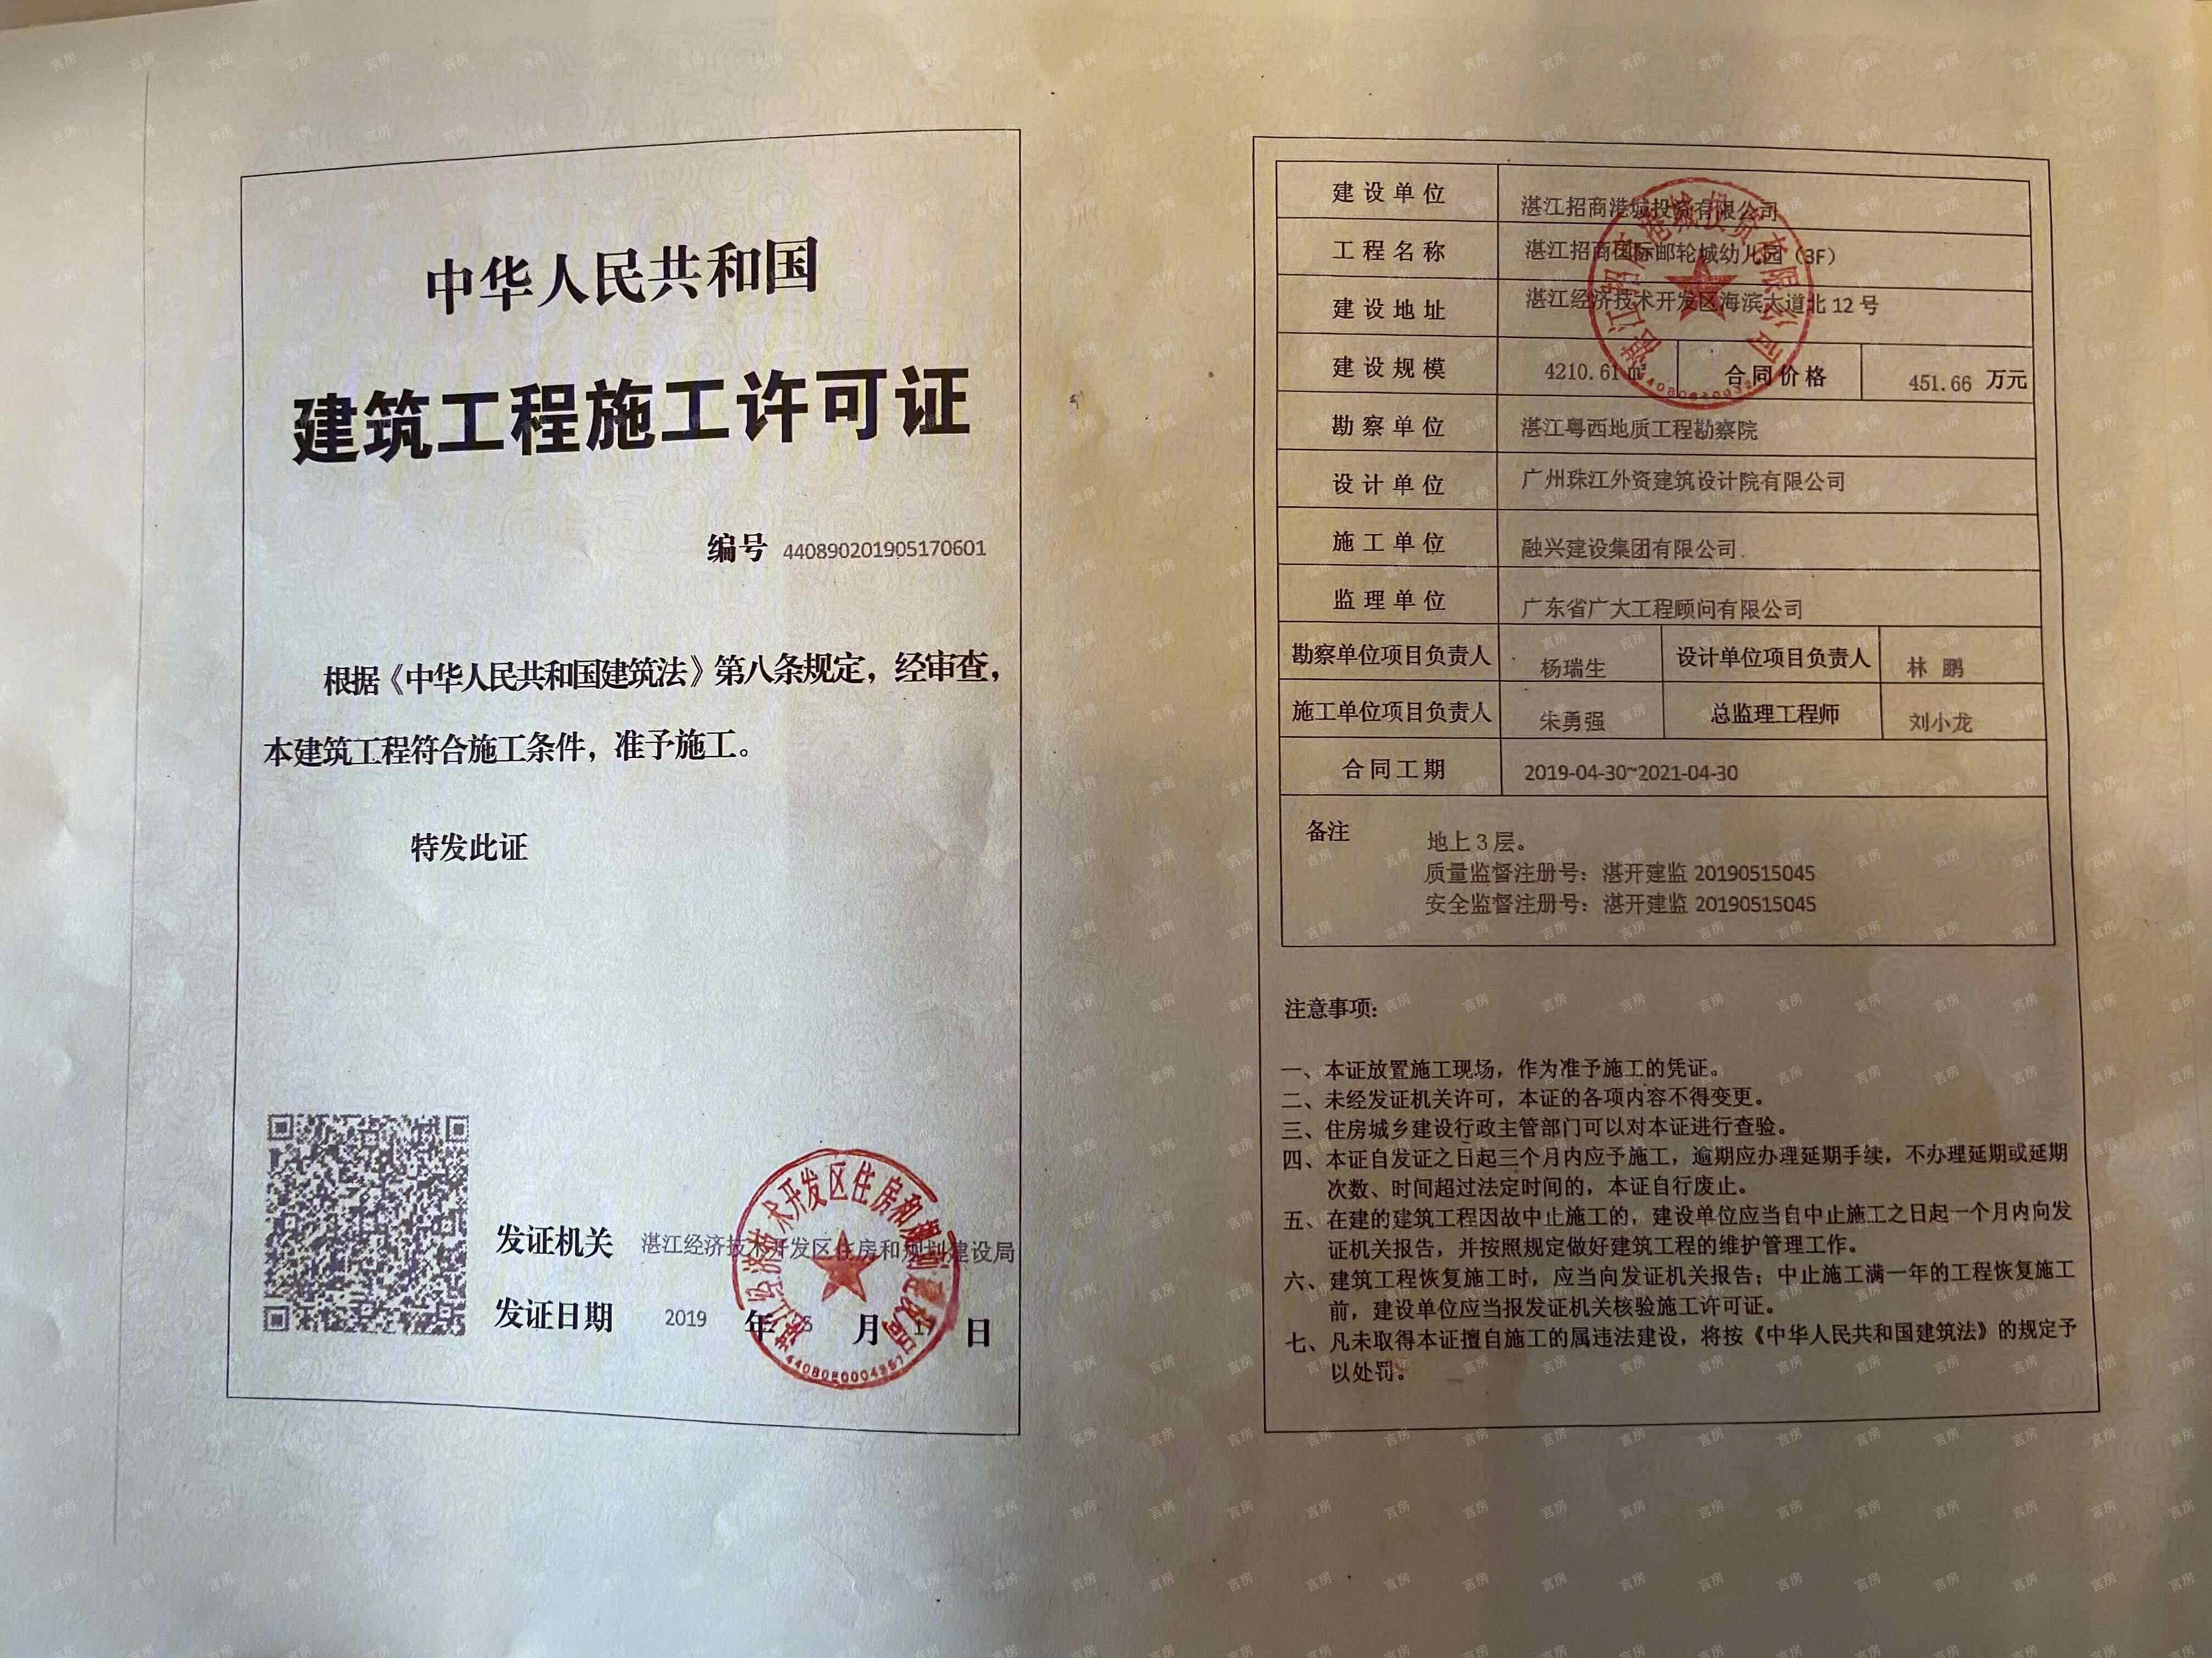 湛江招商国际邮轮城开发商营业执照